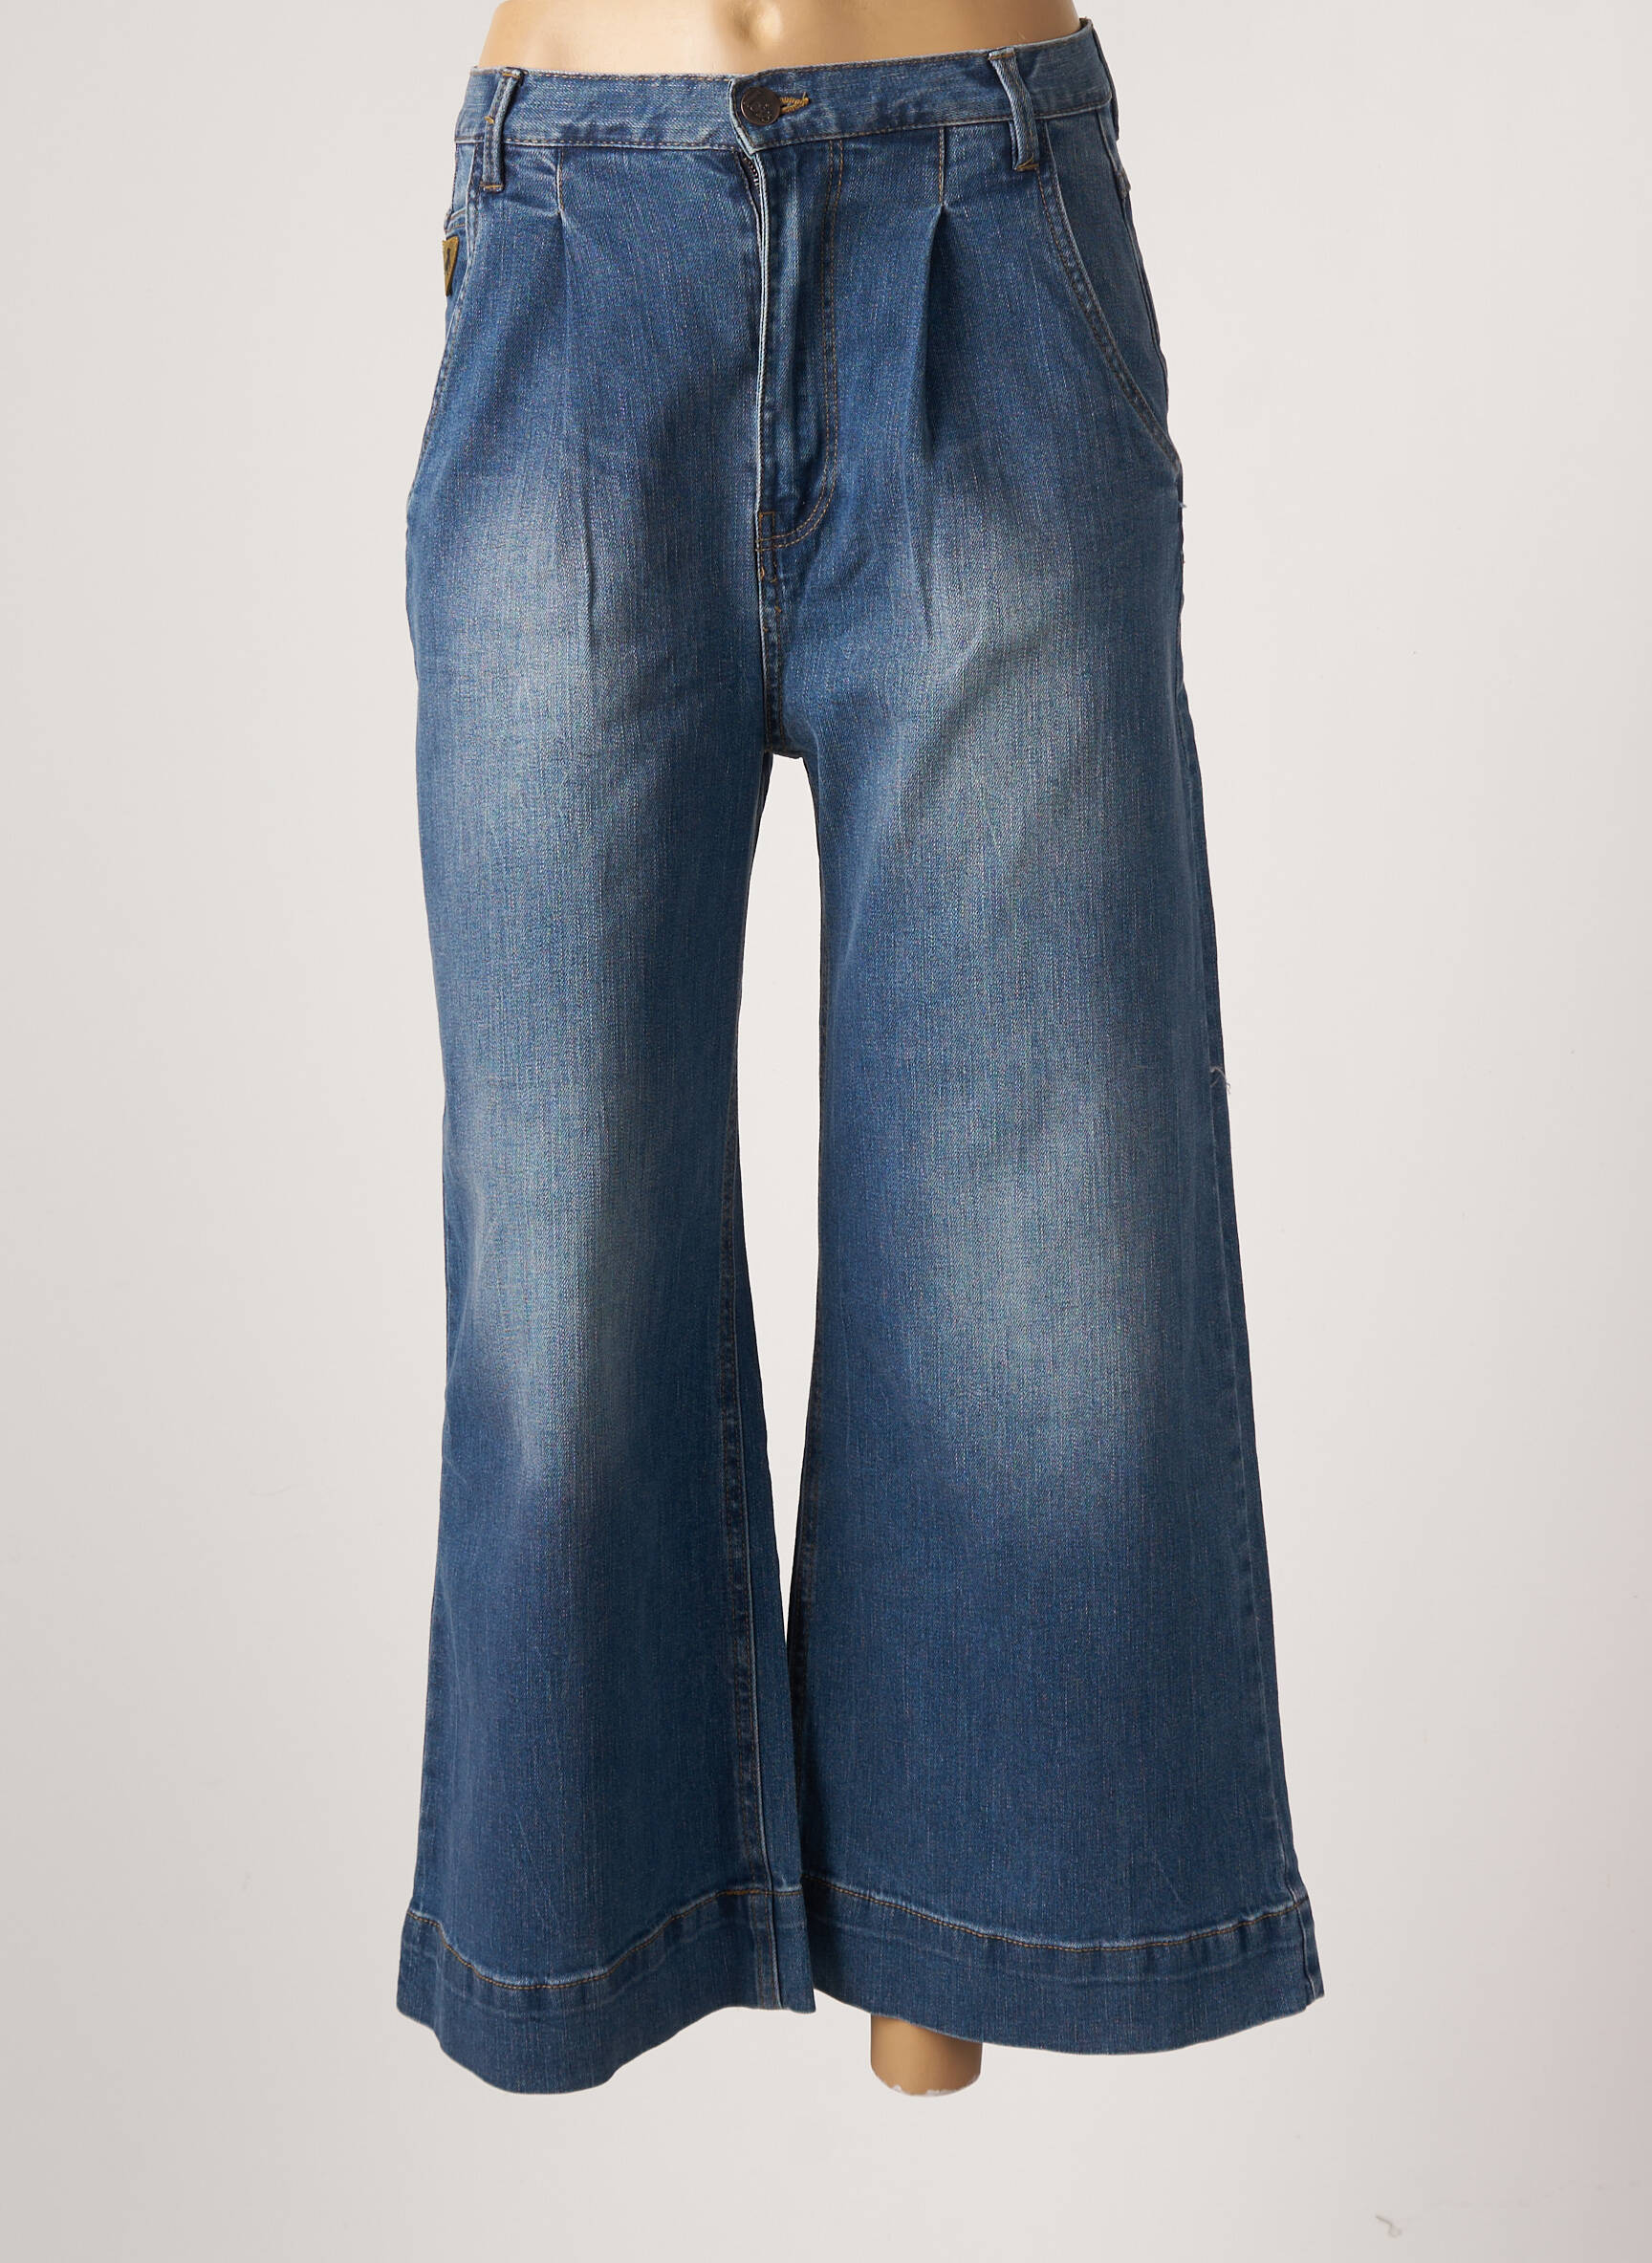 Combinaison pantalon Louisa en jeans bleu délavé